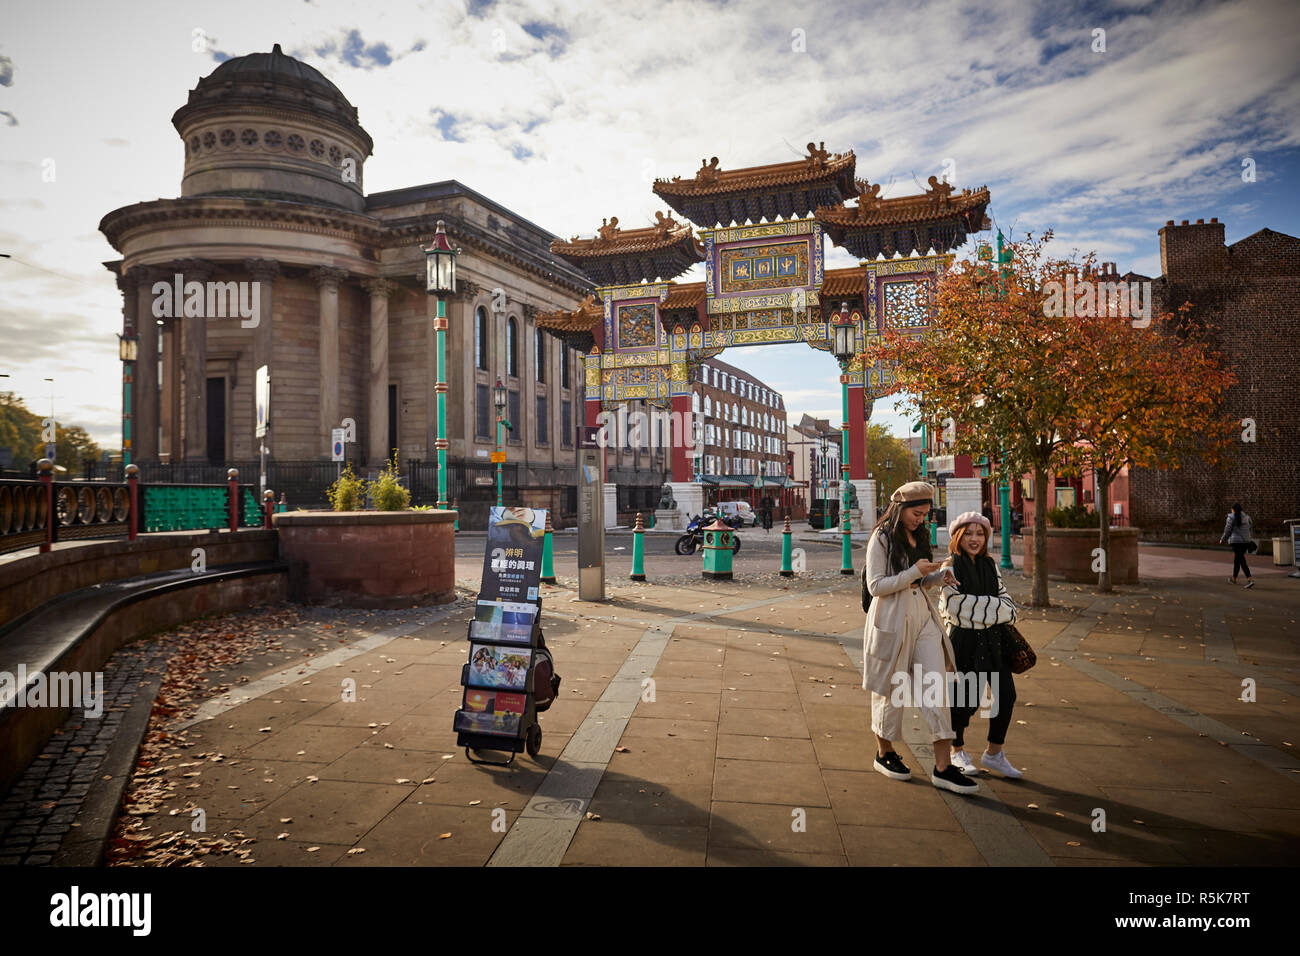 Le centre-ville de Liverpool Chinese Arch Chinatown Gate, rue Nelson accueil dans la plus ancienne communauté chinoise en Europe Banque D'Images